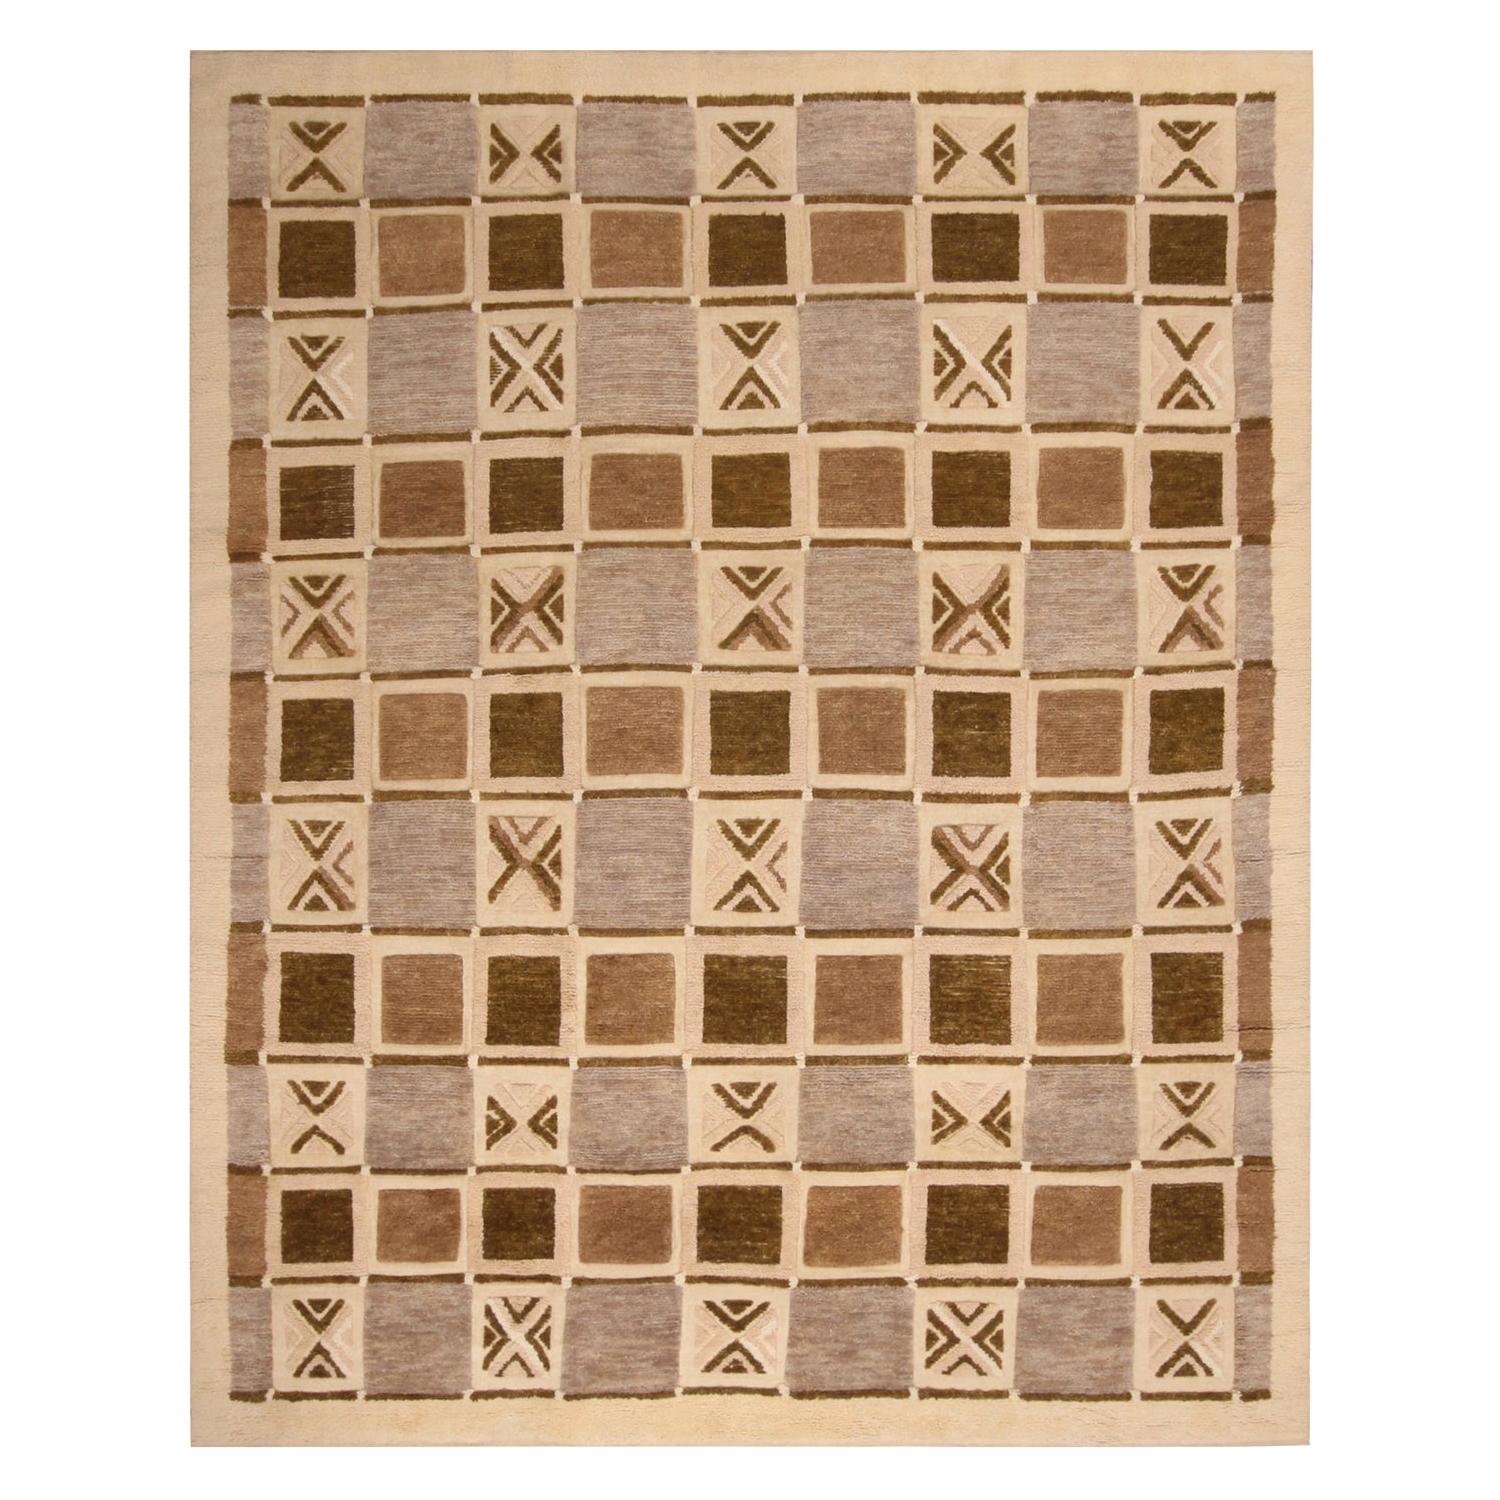 Rug & Kilim’s Scandinavian-Inspired Geometric Beige Brown and Gray Wool Pile Rug